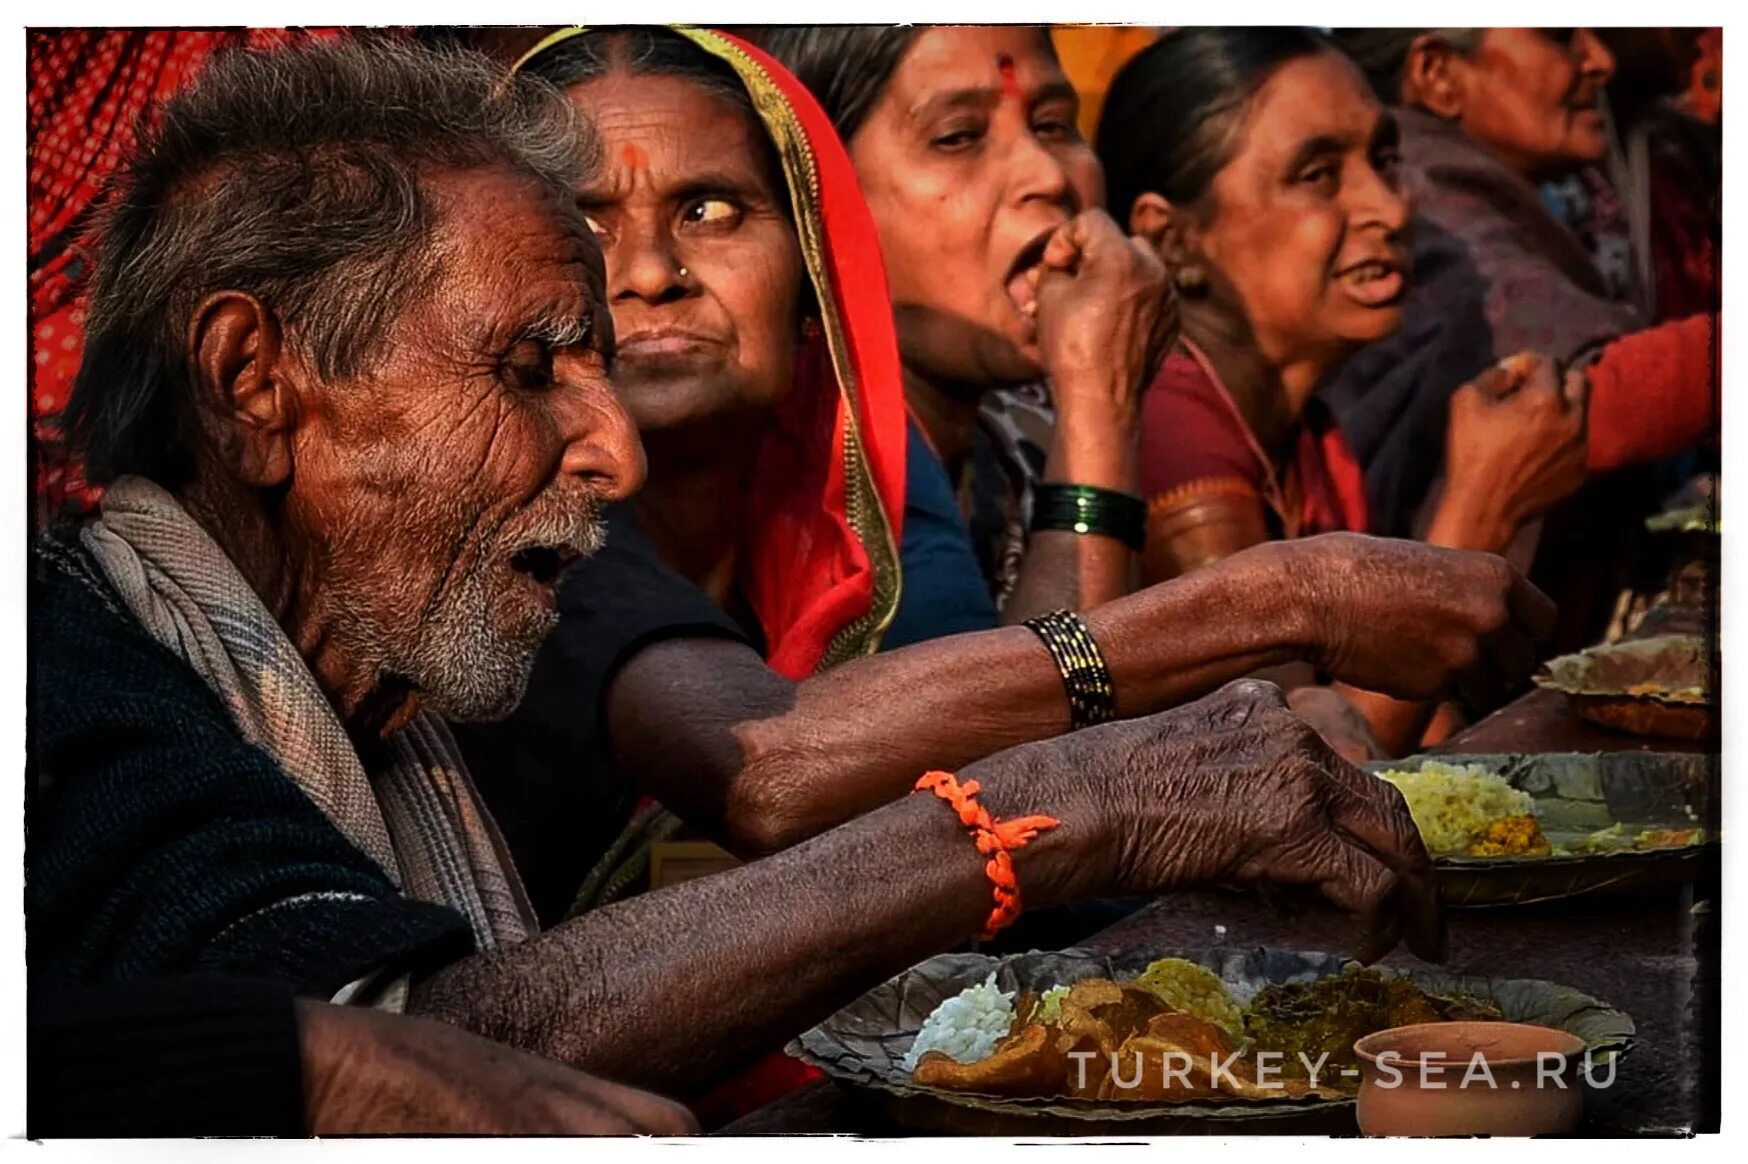 Этикет индии. Индийцы едят руками. В Индии едят руками. Индия еда правой рукой.